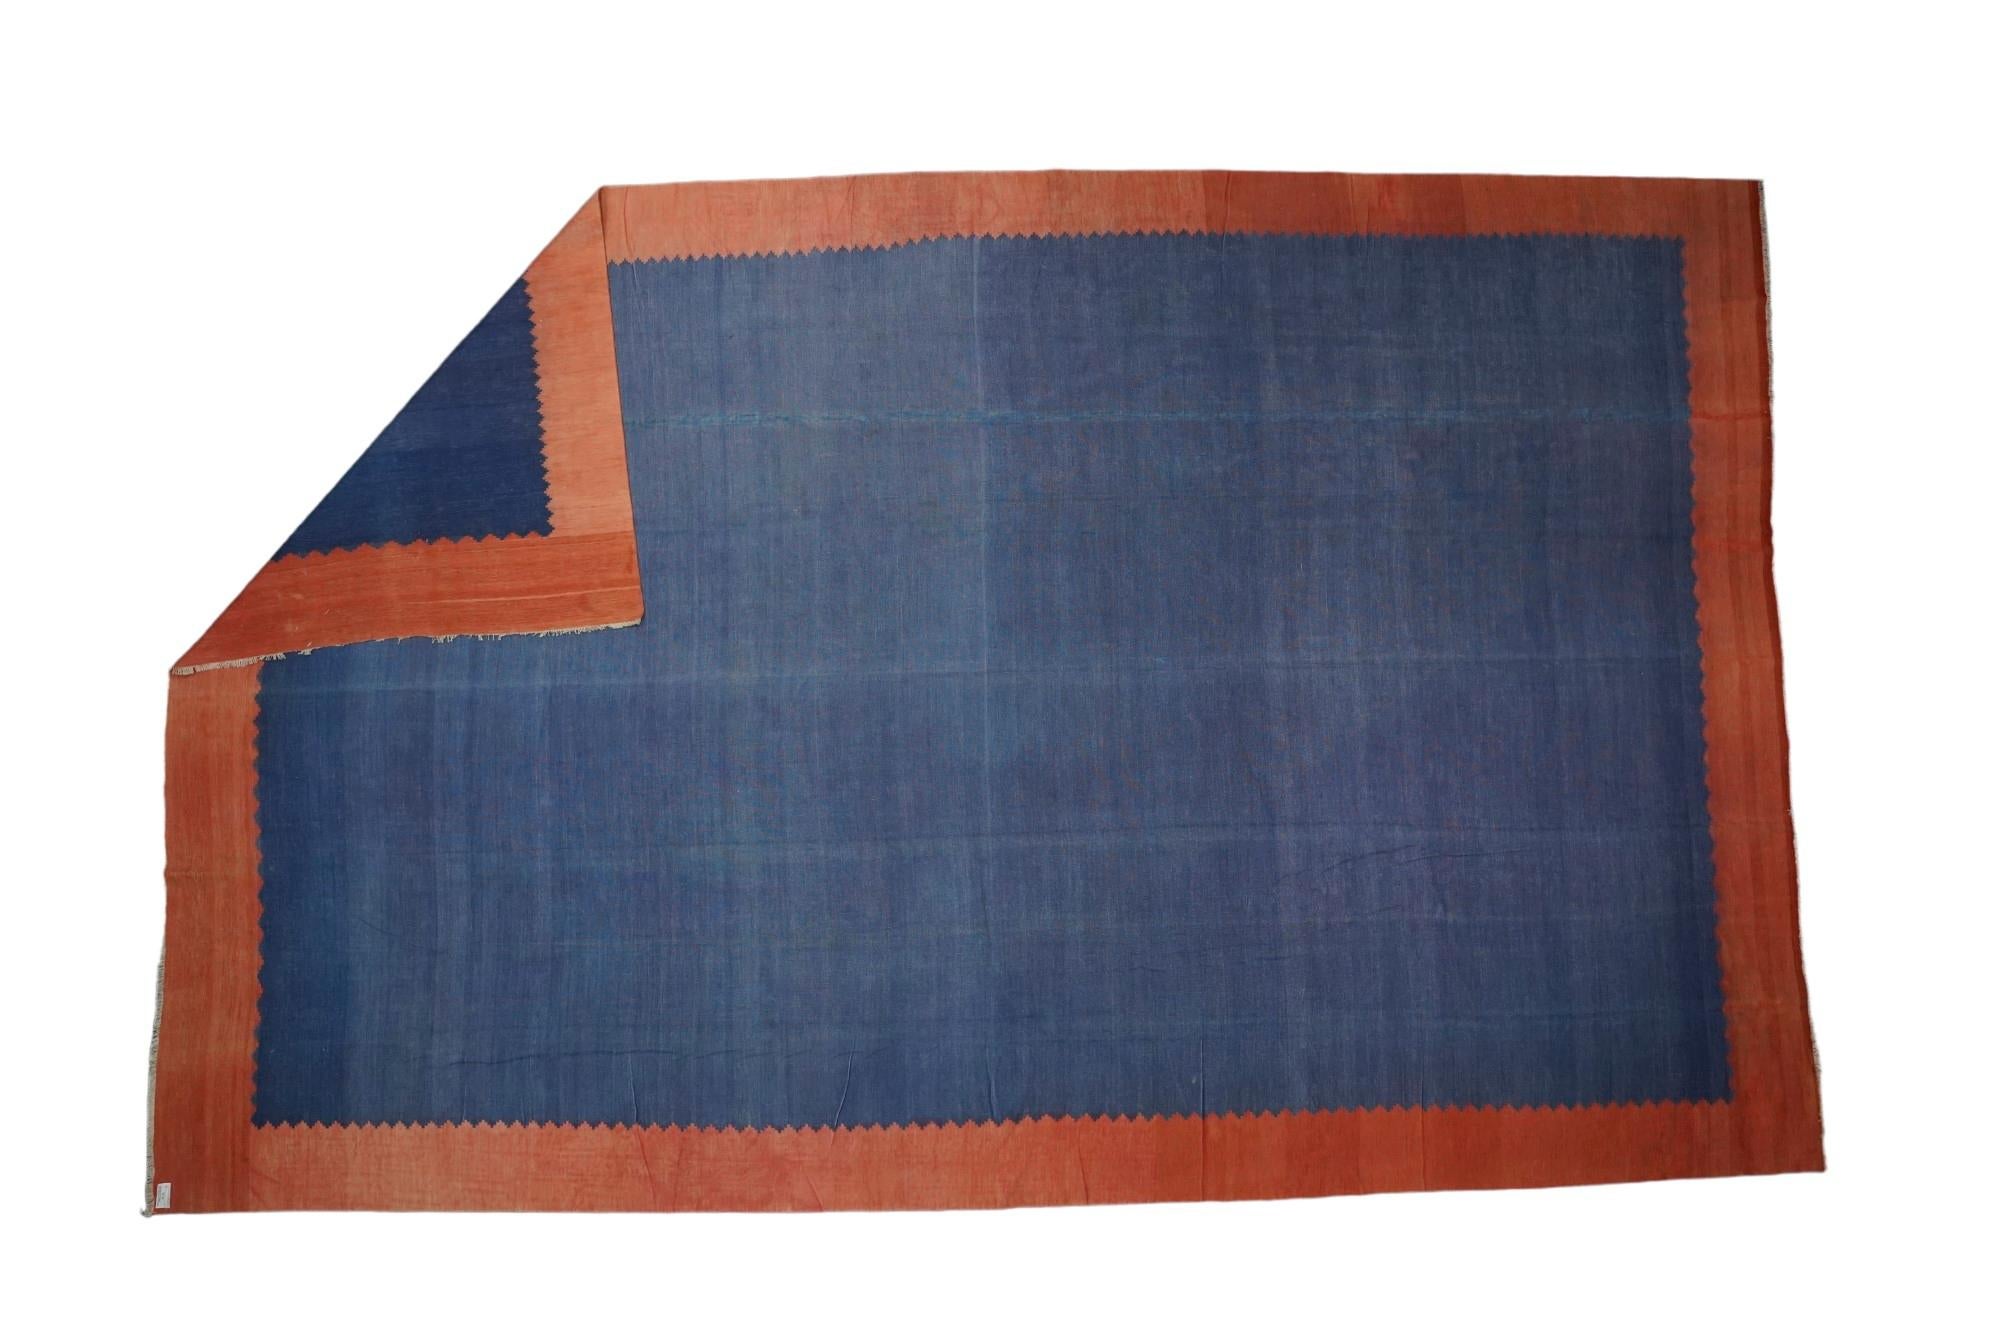 Dieser 11x16 große Teppich ist ein seltener Vintage-Dhurrie-Teppich aus einer aufregenden neuen Kuration von Rug &New Kilim aus der Mitte des Jahrhunderts. Das handgewebte Flachgewebe aus Wolle stammt aus Indien (ca. 1950-1960) und zeichnet sich